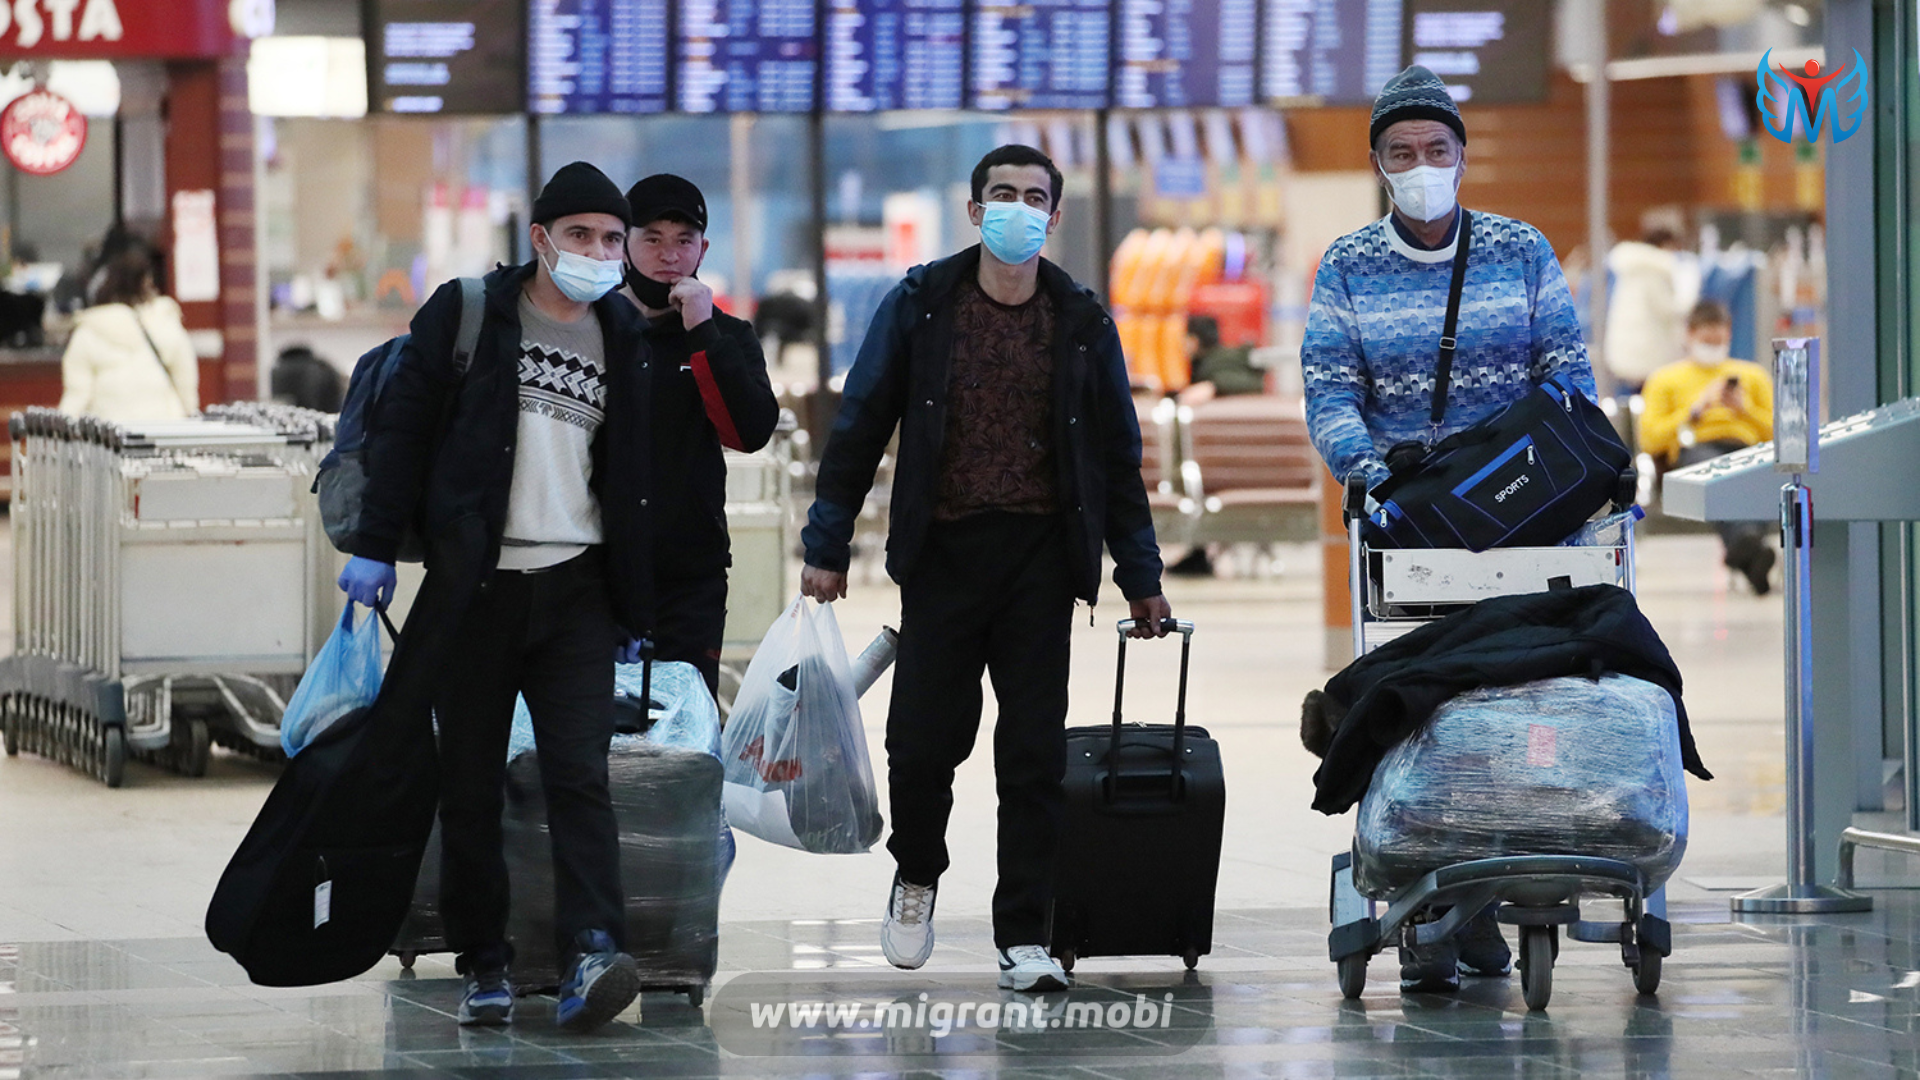 Иностранцы уехали. Мигранты в аэропорту. Трудовые мигранты в аэропорту. Мигранты в аэропортах Москвы. Узбеки в аэропорту.